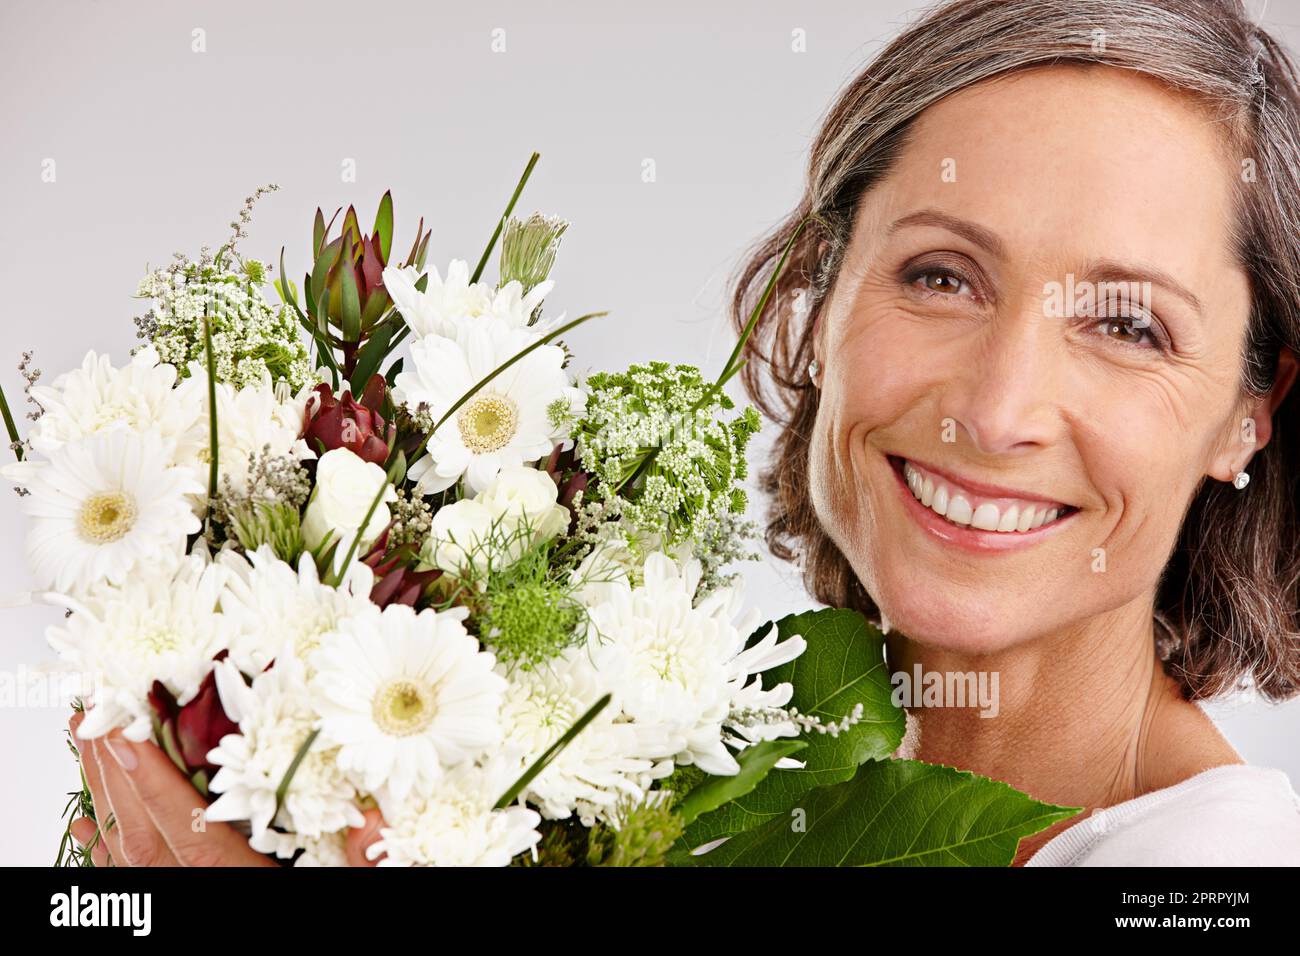 Chaque femme aime recevoir des fleurs. Portrait court en studio d'une belle femme mûre tenant un bouquet de fleurs Banque D'Images